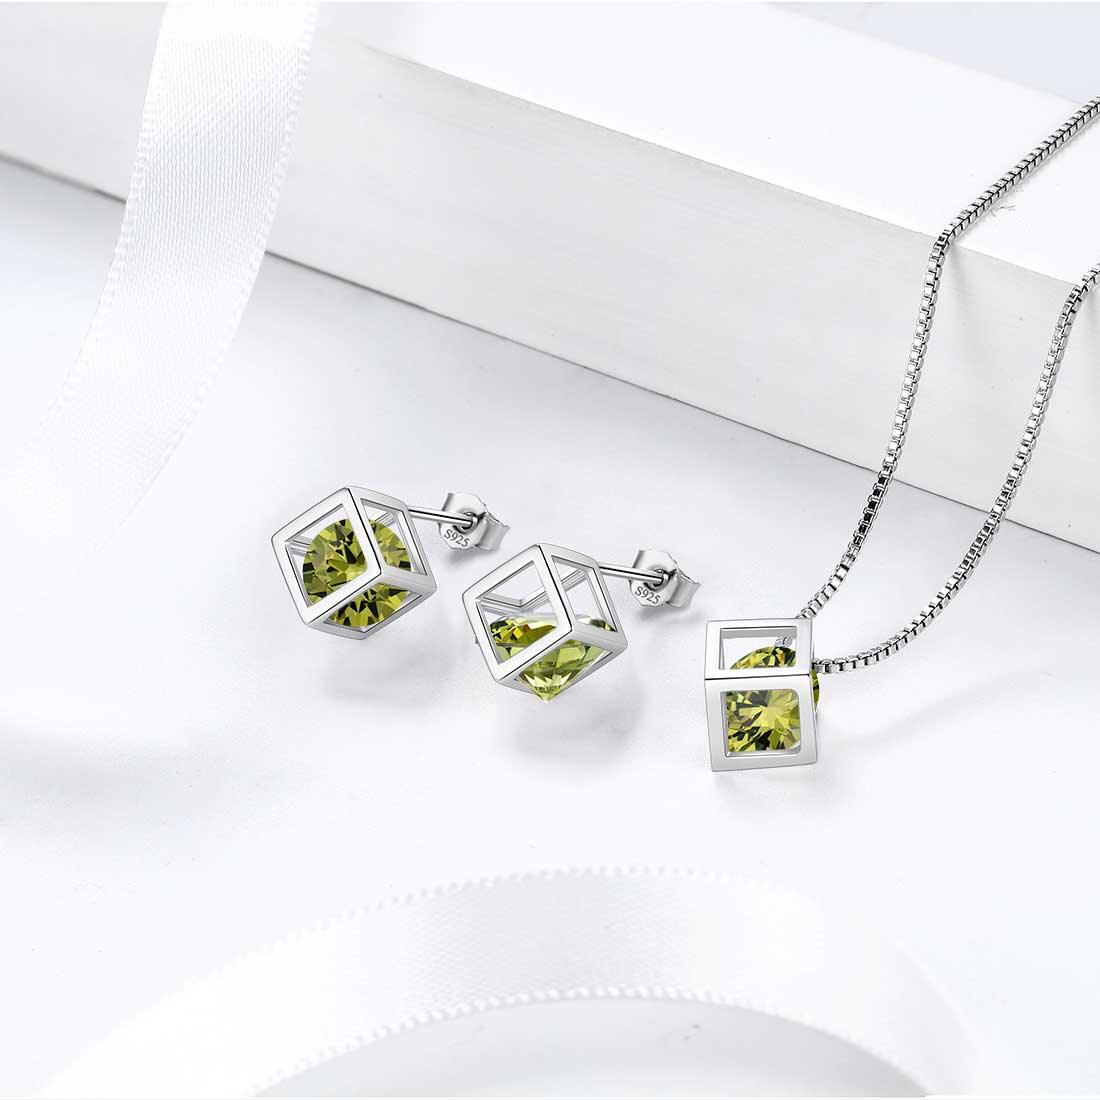 3D Cube Birthstone August Peridot Earrings Sterling Silver - Earrings - Aurora Tears